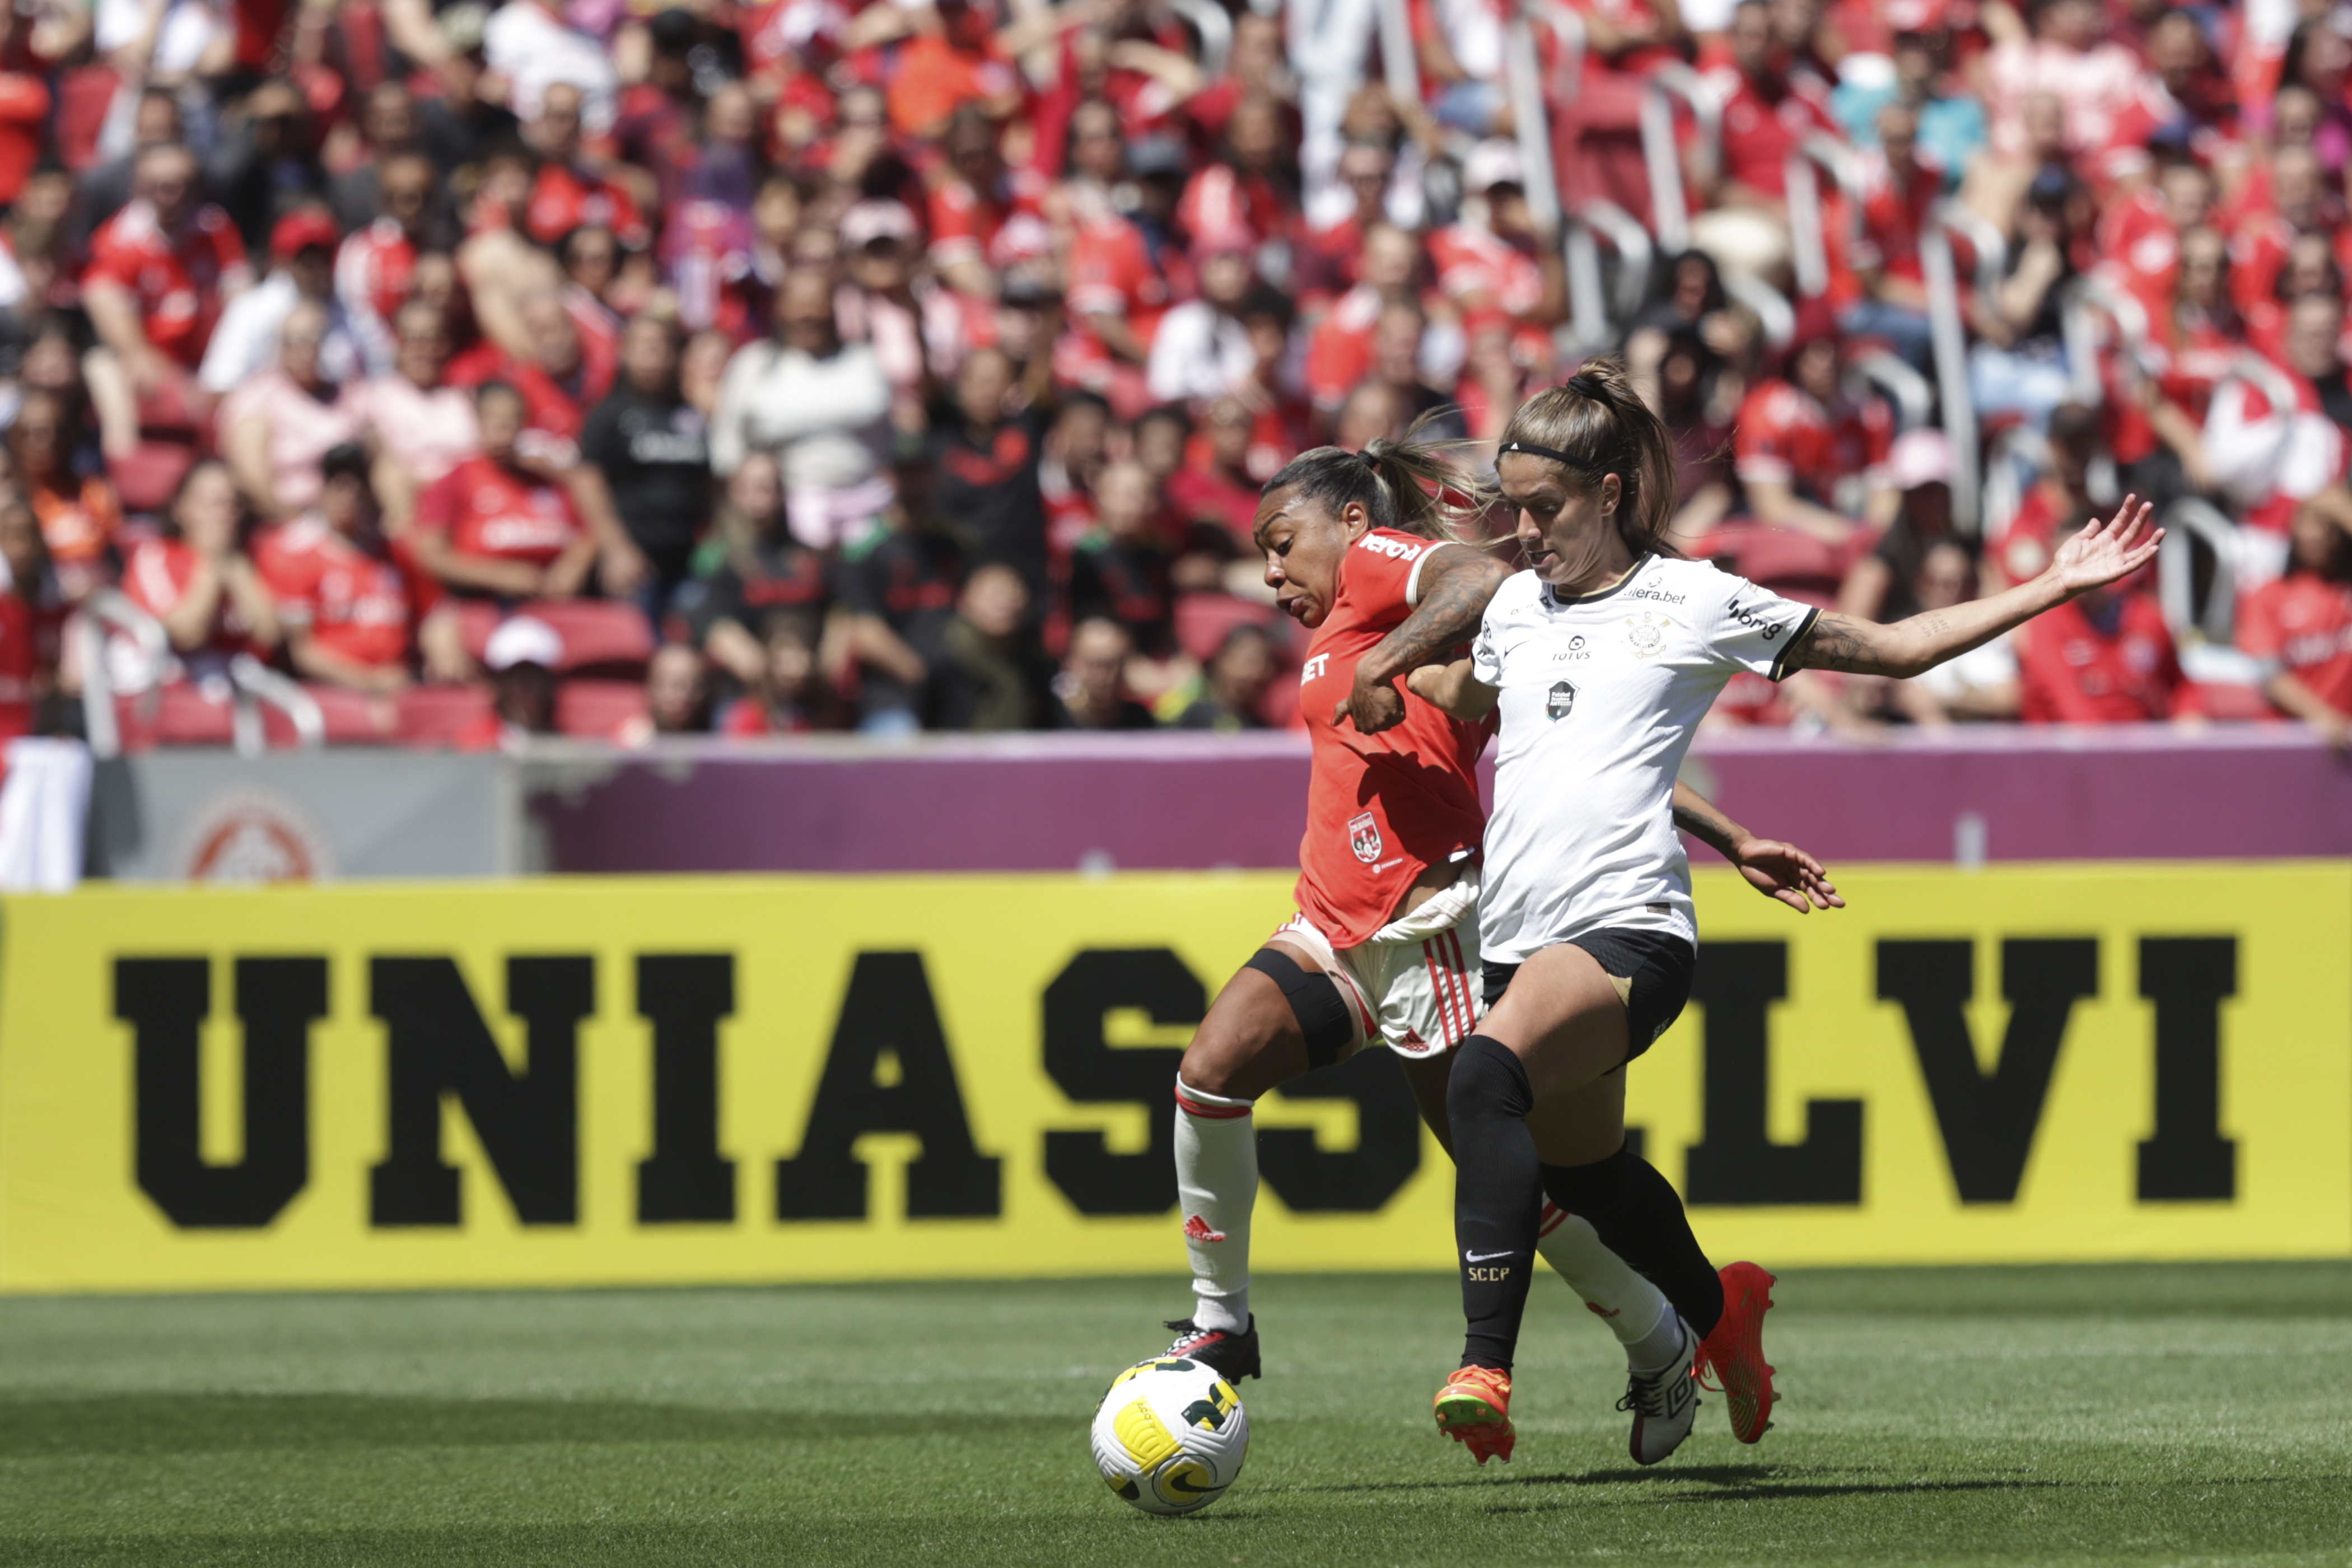 Pelo Brasileirão Feminino, Internacional e Corinthians reeditam final